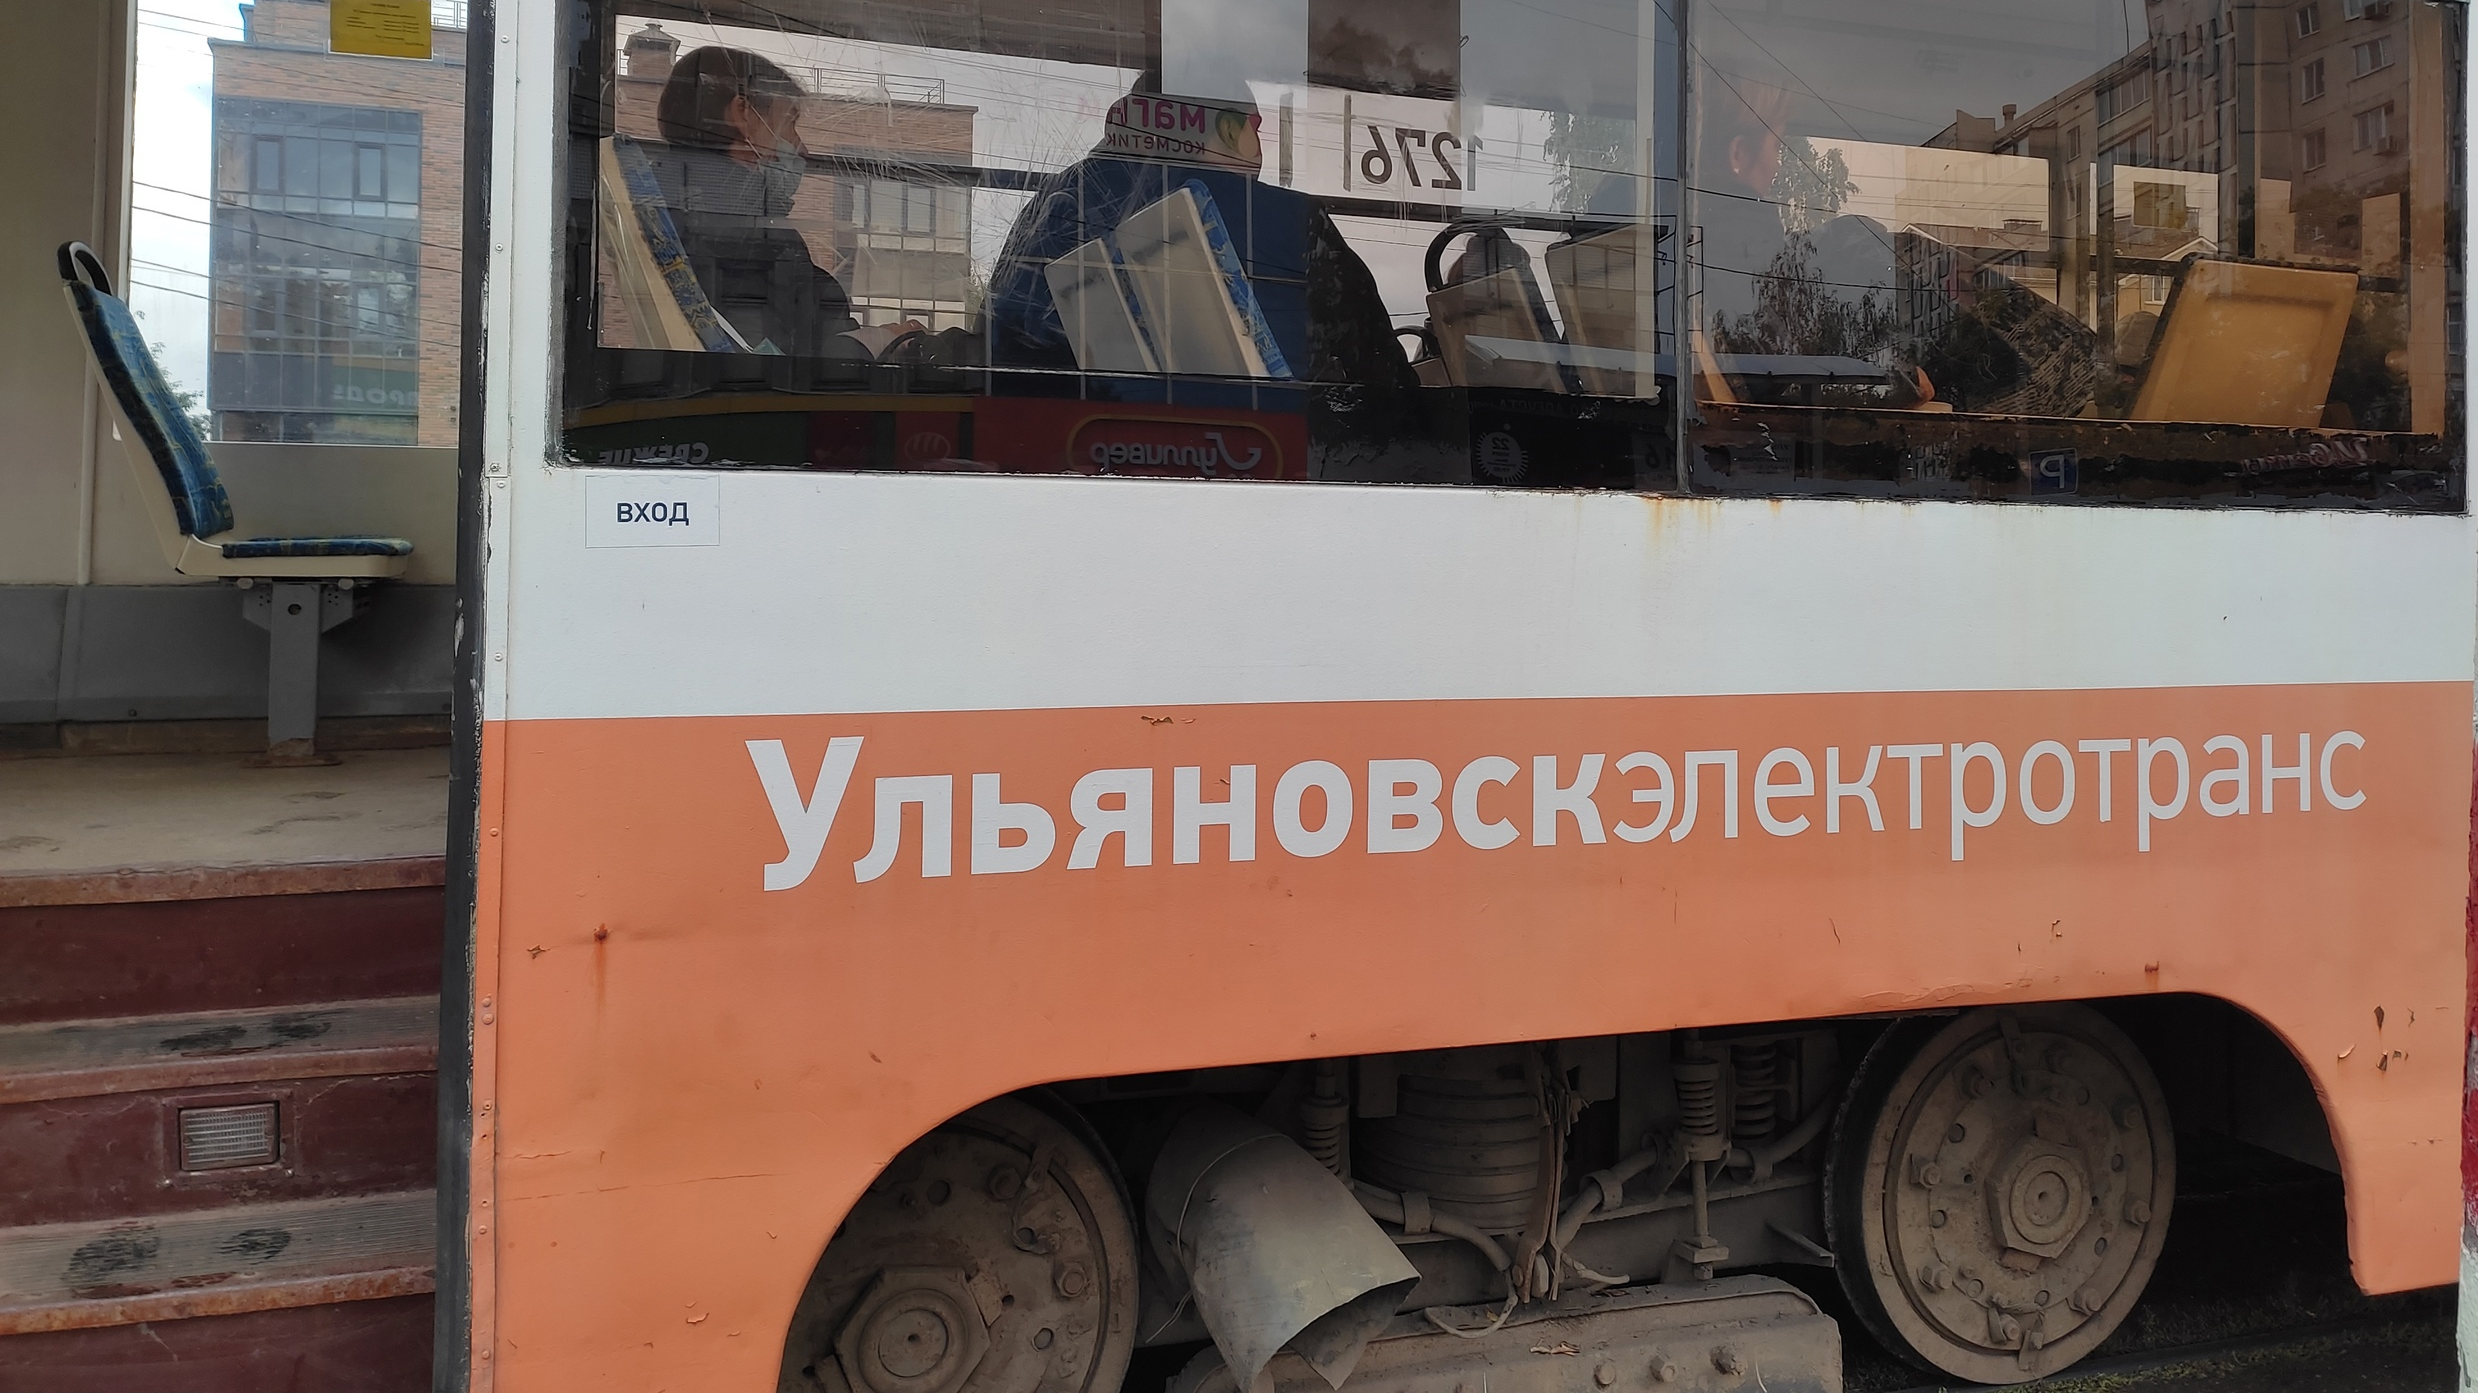 Вечером 21 декабря на Инзенской и Локомотивной встали трамваи